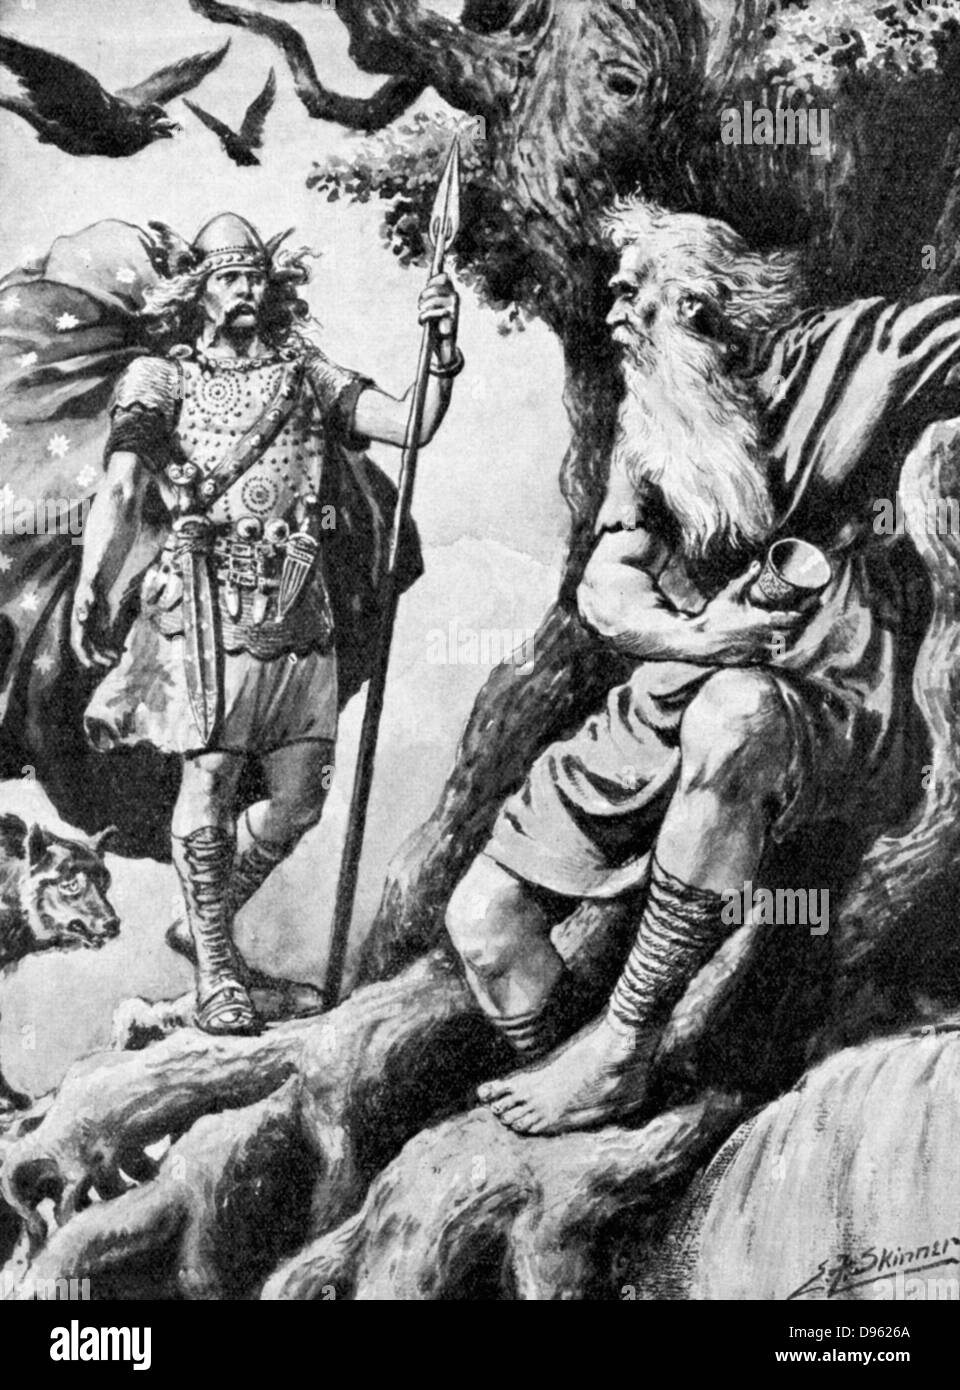 Odin ou Wotan. L'un des principaux dieux de la mythologie nordique. Dieu de la guerre. Ici il cherche la sagesse de lui faire tout-puissant. Pour ce qu'il sacrifie un oeil. Avec lui sont les corbeaux Huggin (pensée) et Muninn (Mémoire). C1900 Demi-teinte. Banque D'Images